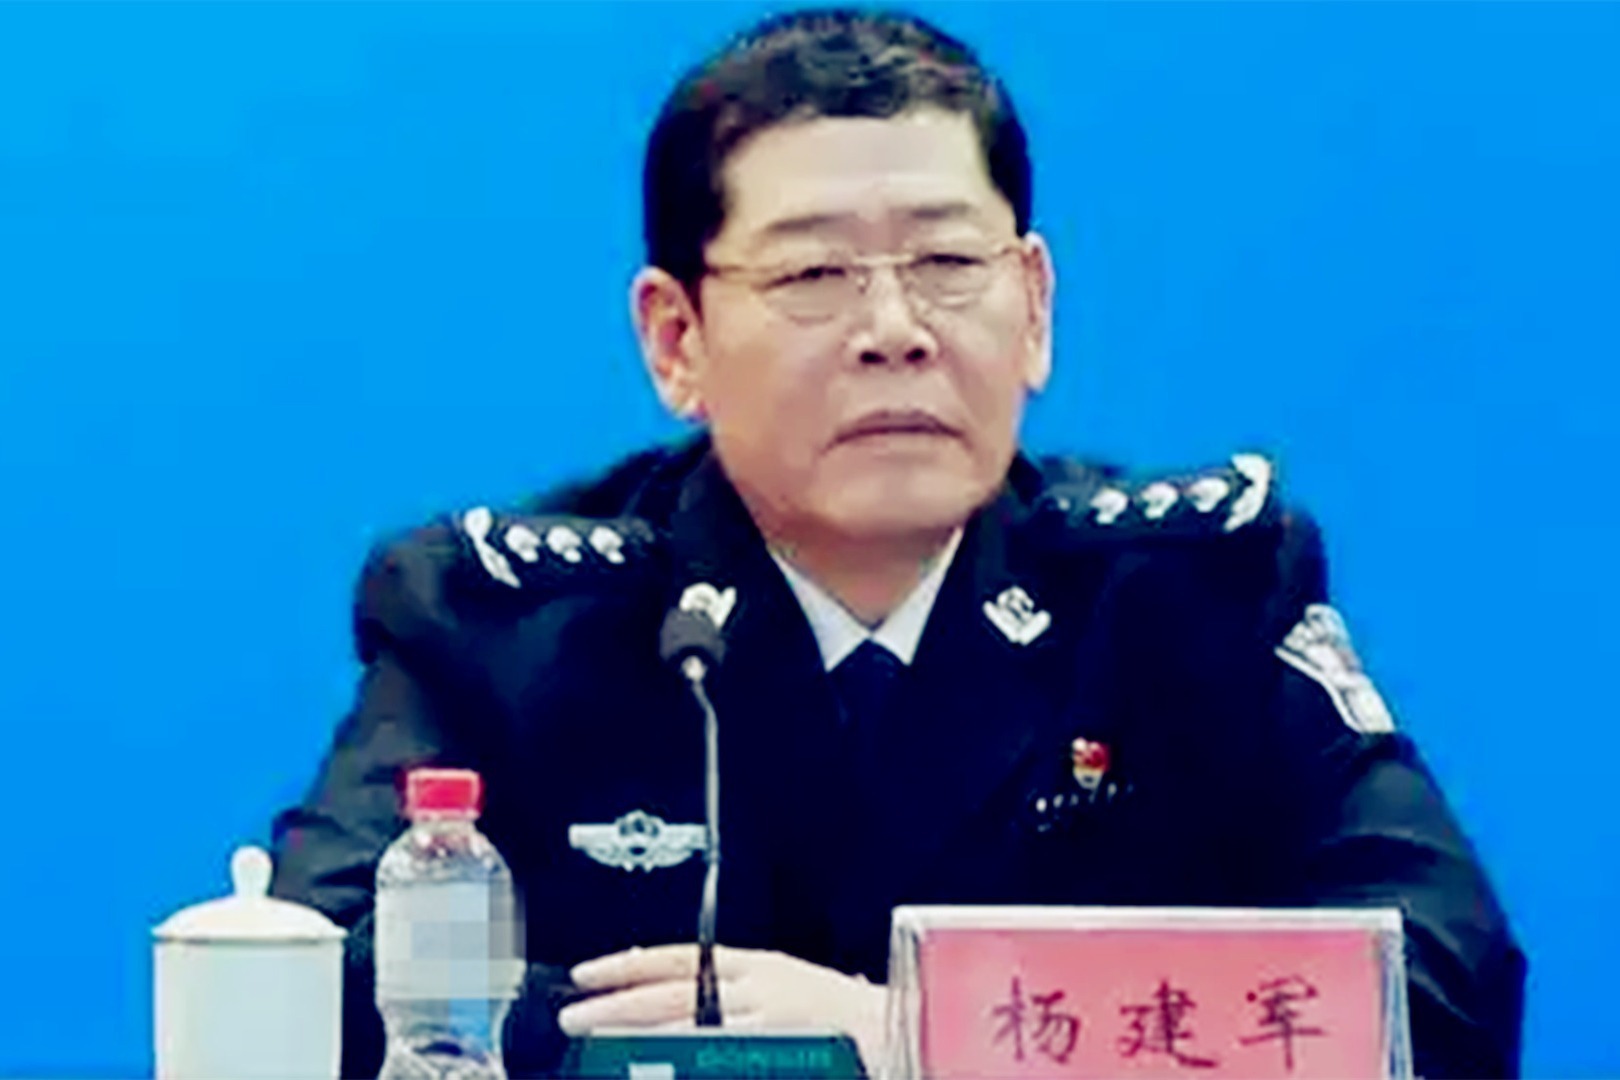 公安部副部长孟宏伟收受贿赂、涉嫌违法被查_国家监委